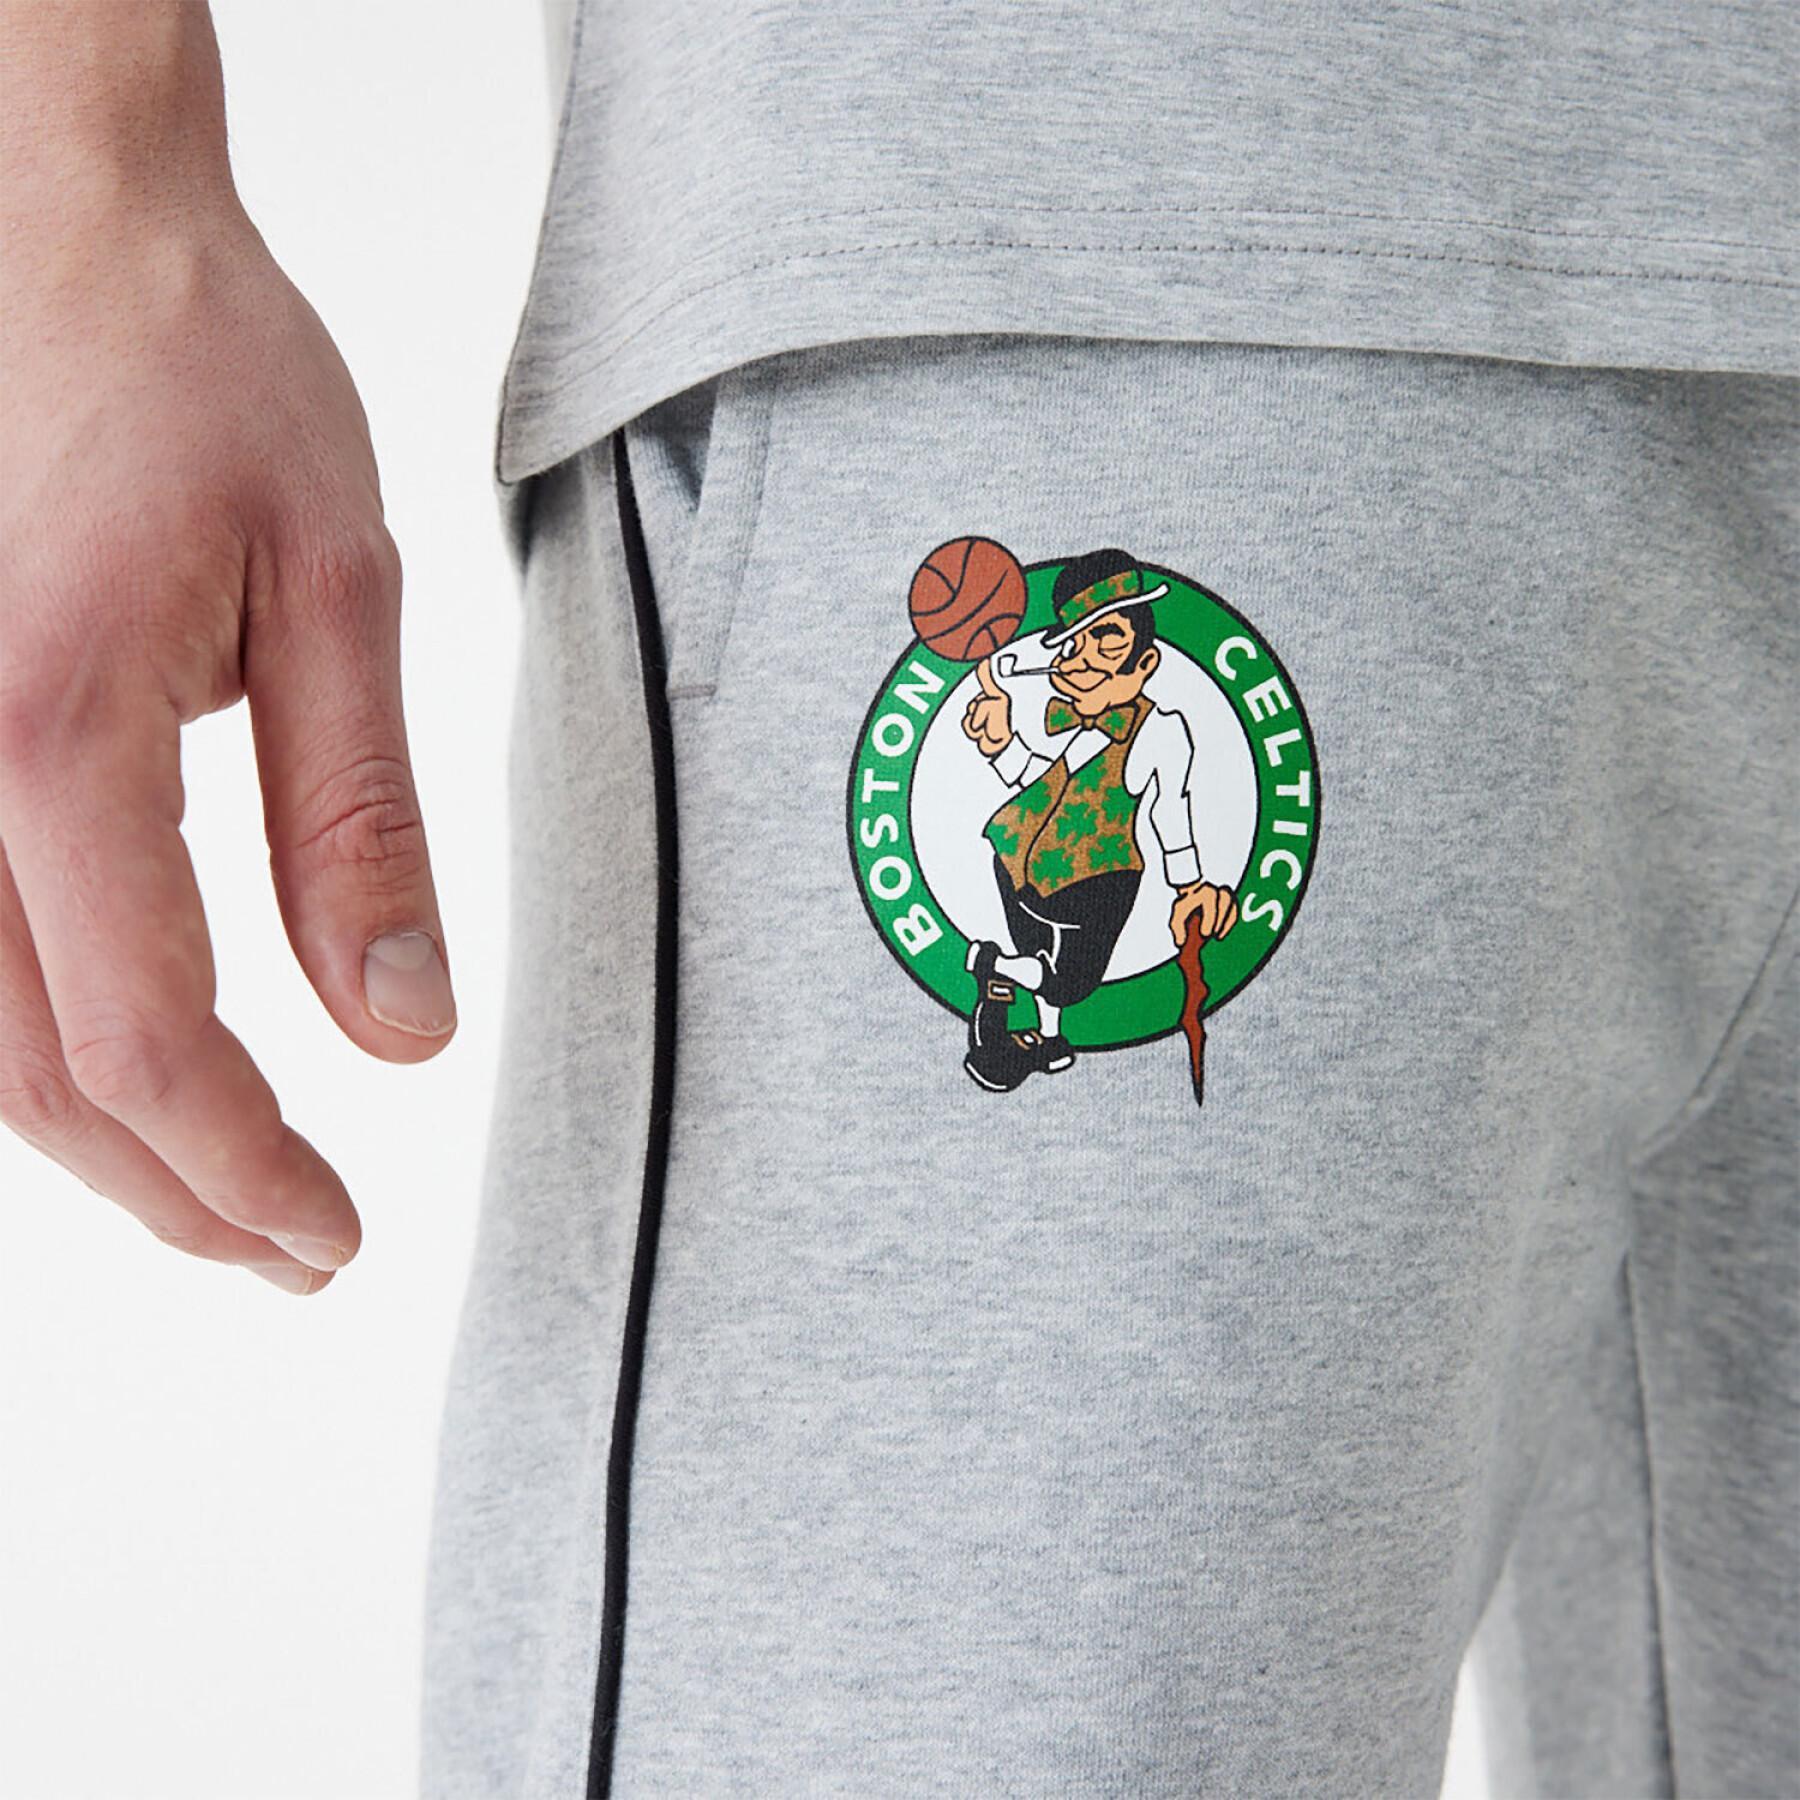 Trainingshose Boston Celtics NBA